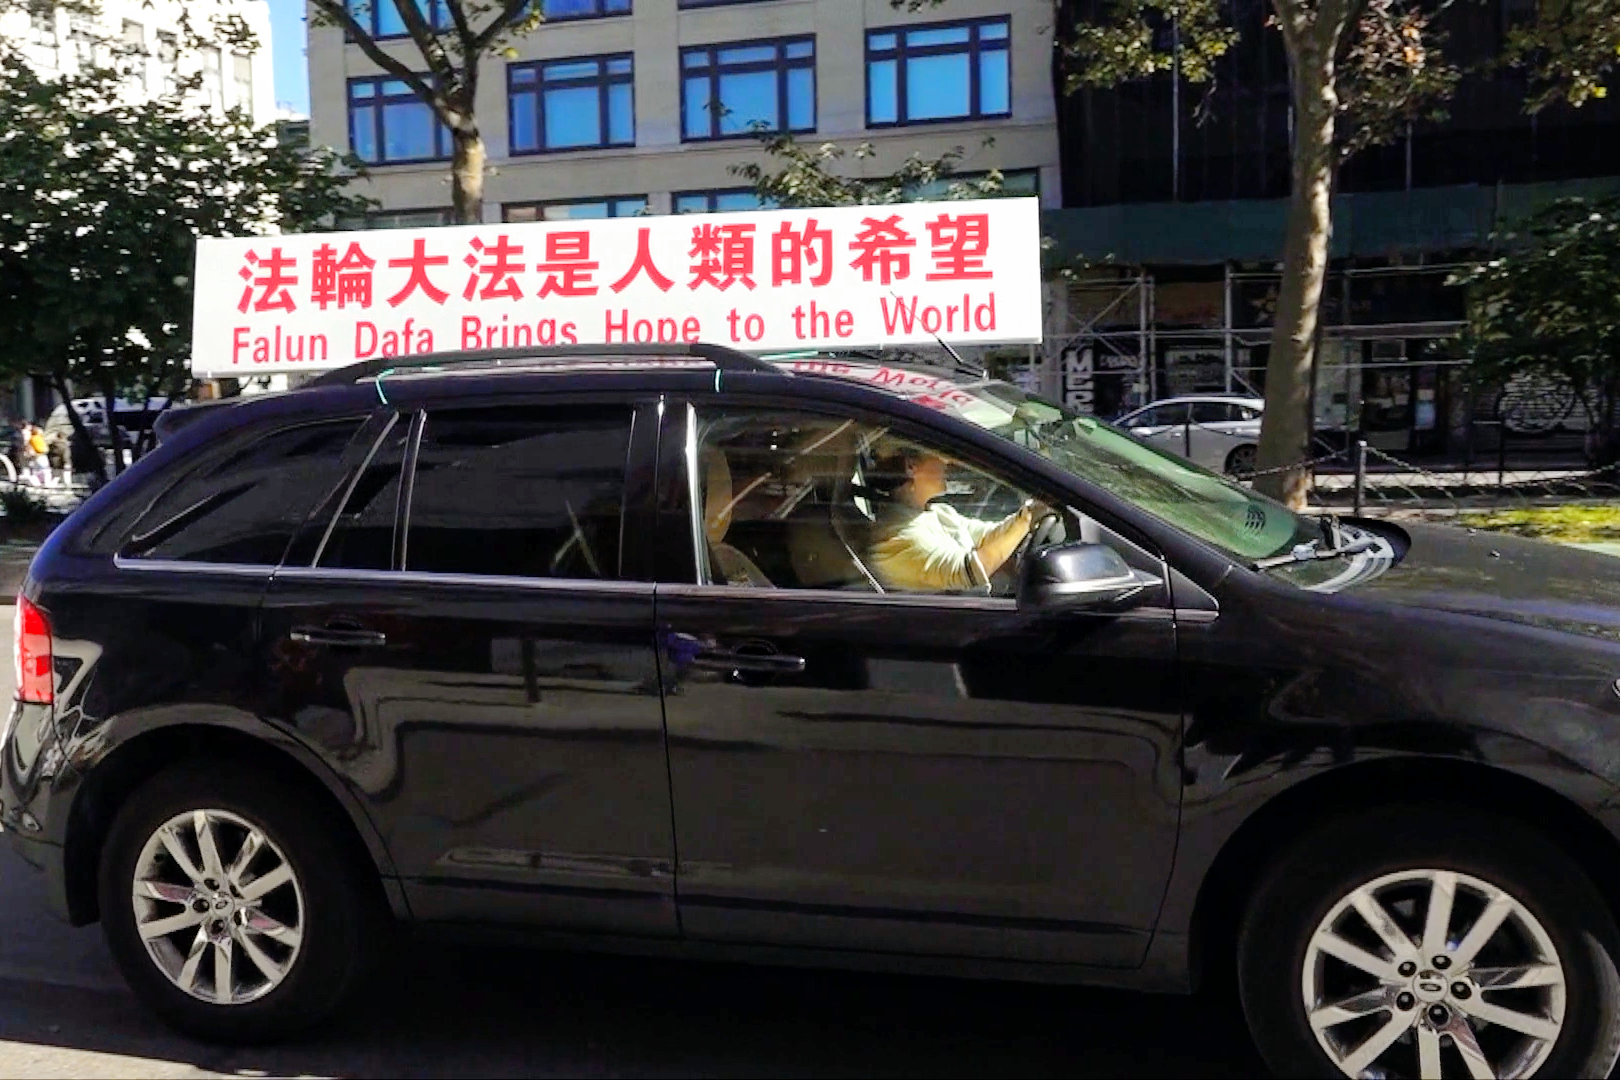 法輪功車隊華埠遊行 穿梭鬧市傳真相